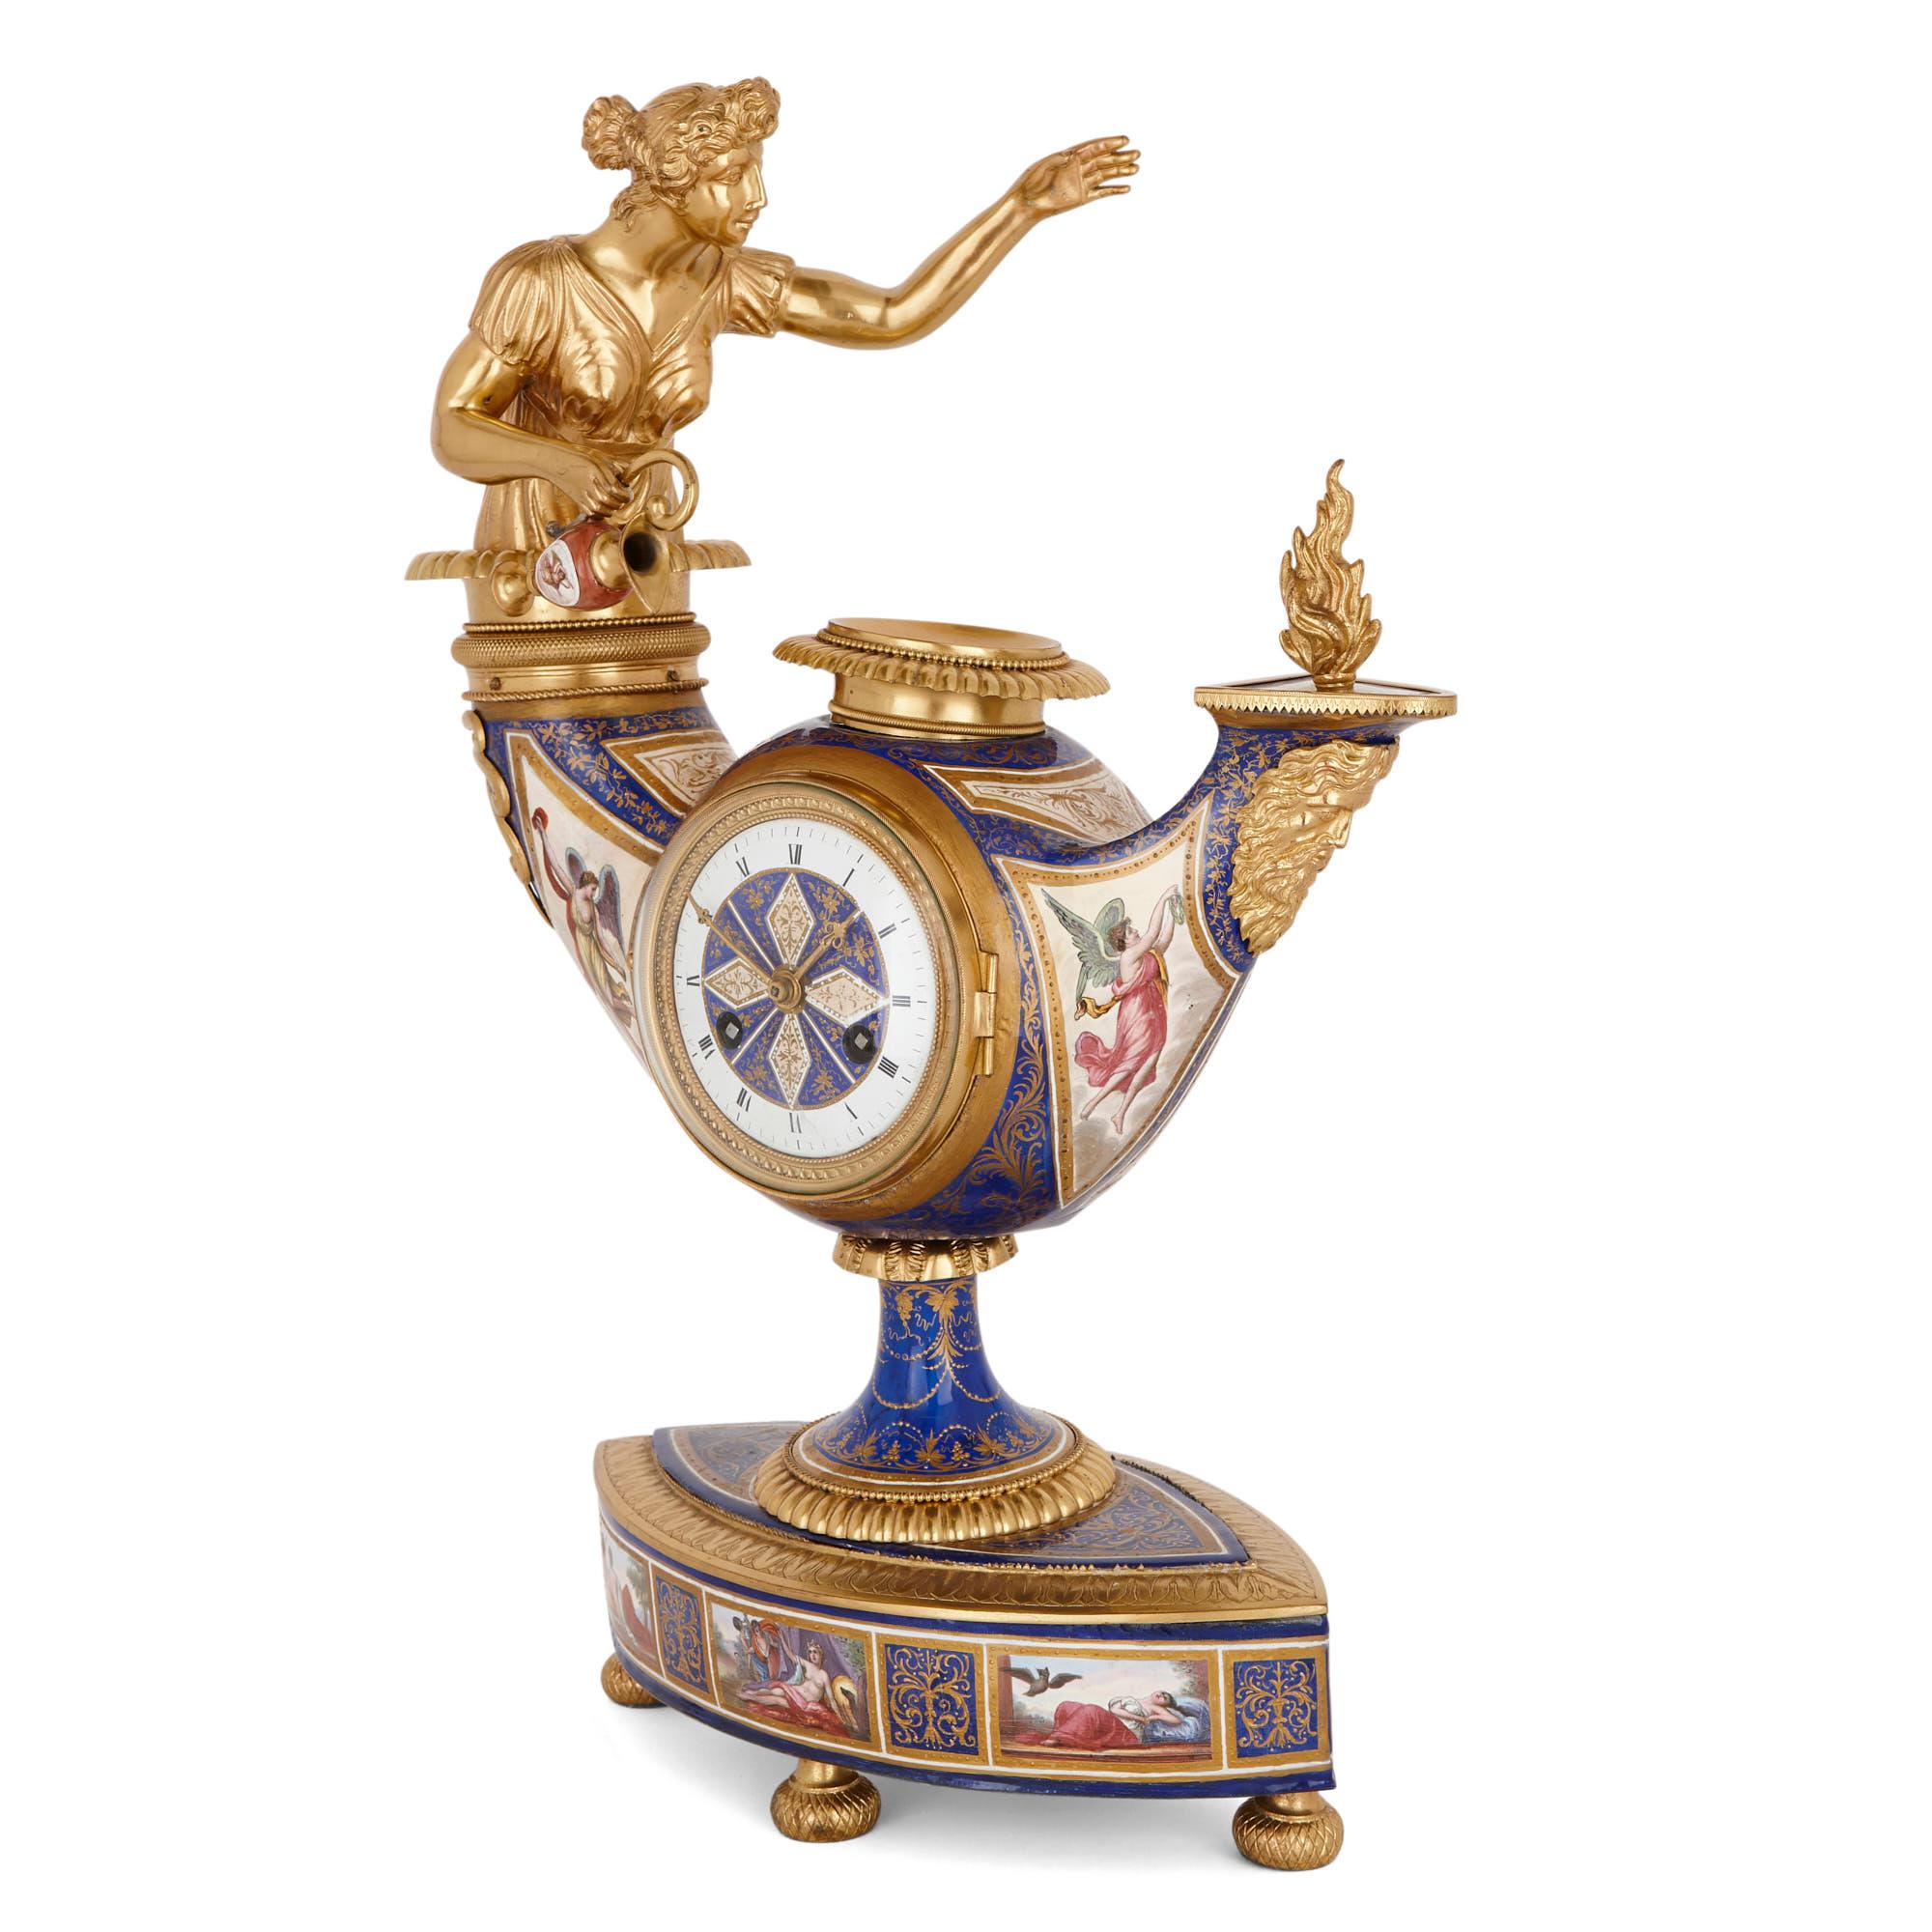 Diese prächtige silbervergoldete und emaillierte Lampenuhr wurde um 1870 in Wien hergestellt. Die Uhr steht auf einem rautenförmigen Sockel, der mit emaillierten Tafeln versehen ist, auf denen liegende Figuren dargestellt sind, die von Tafeln mit